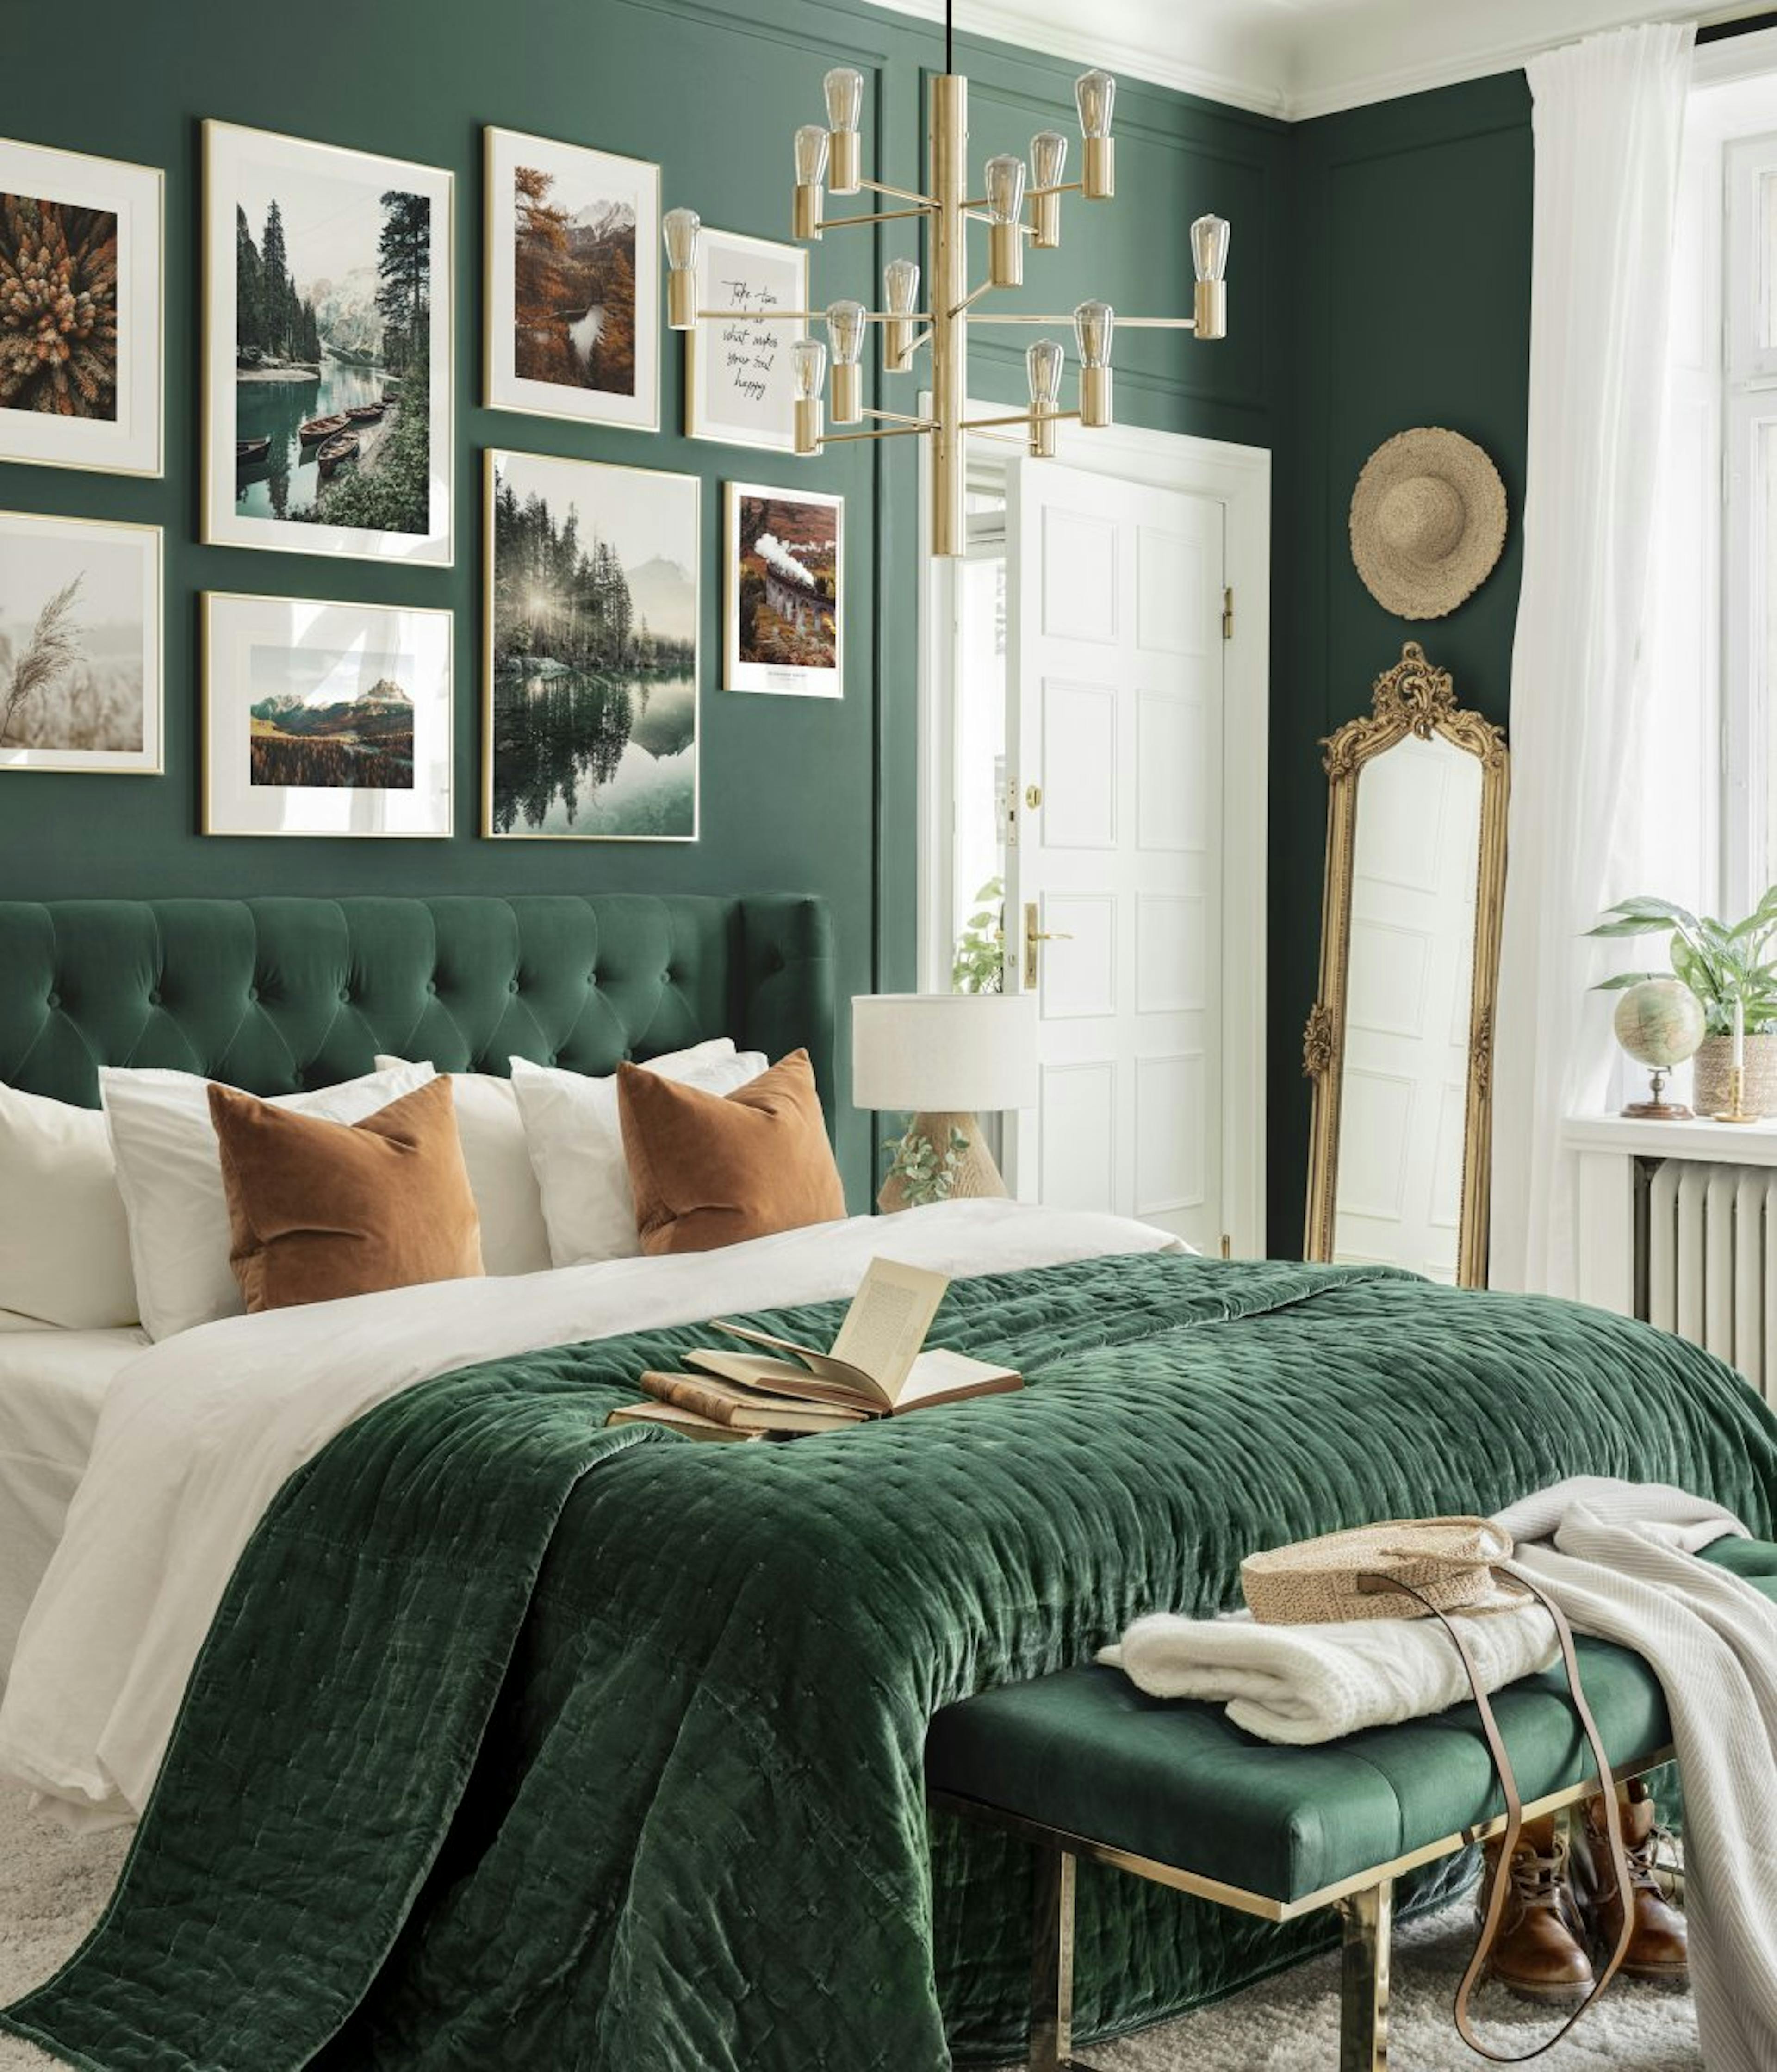 Natur billedvæg grønt soveværelse landskabsplakater guldrammer